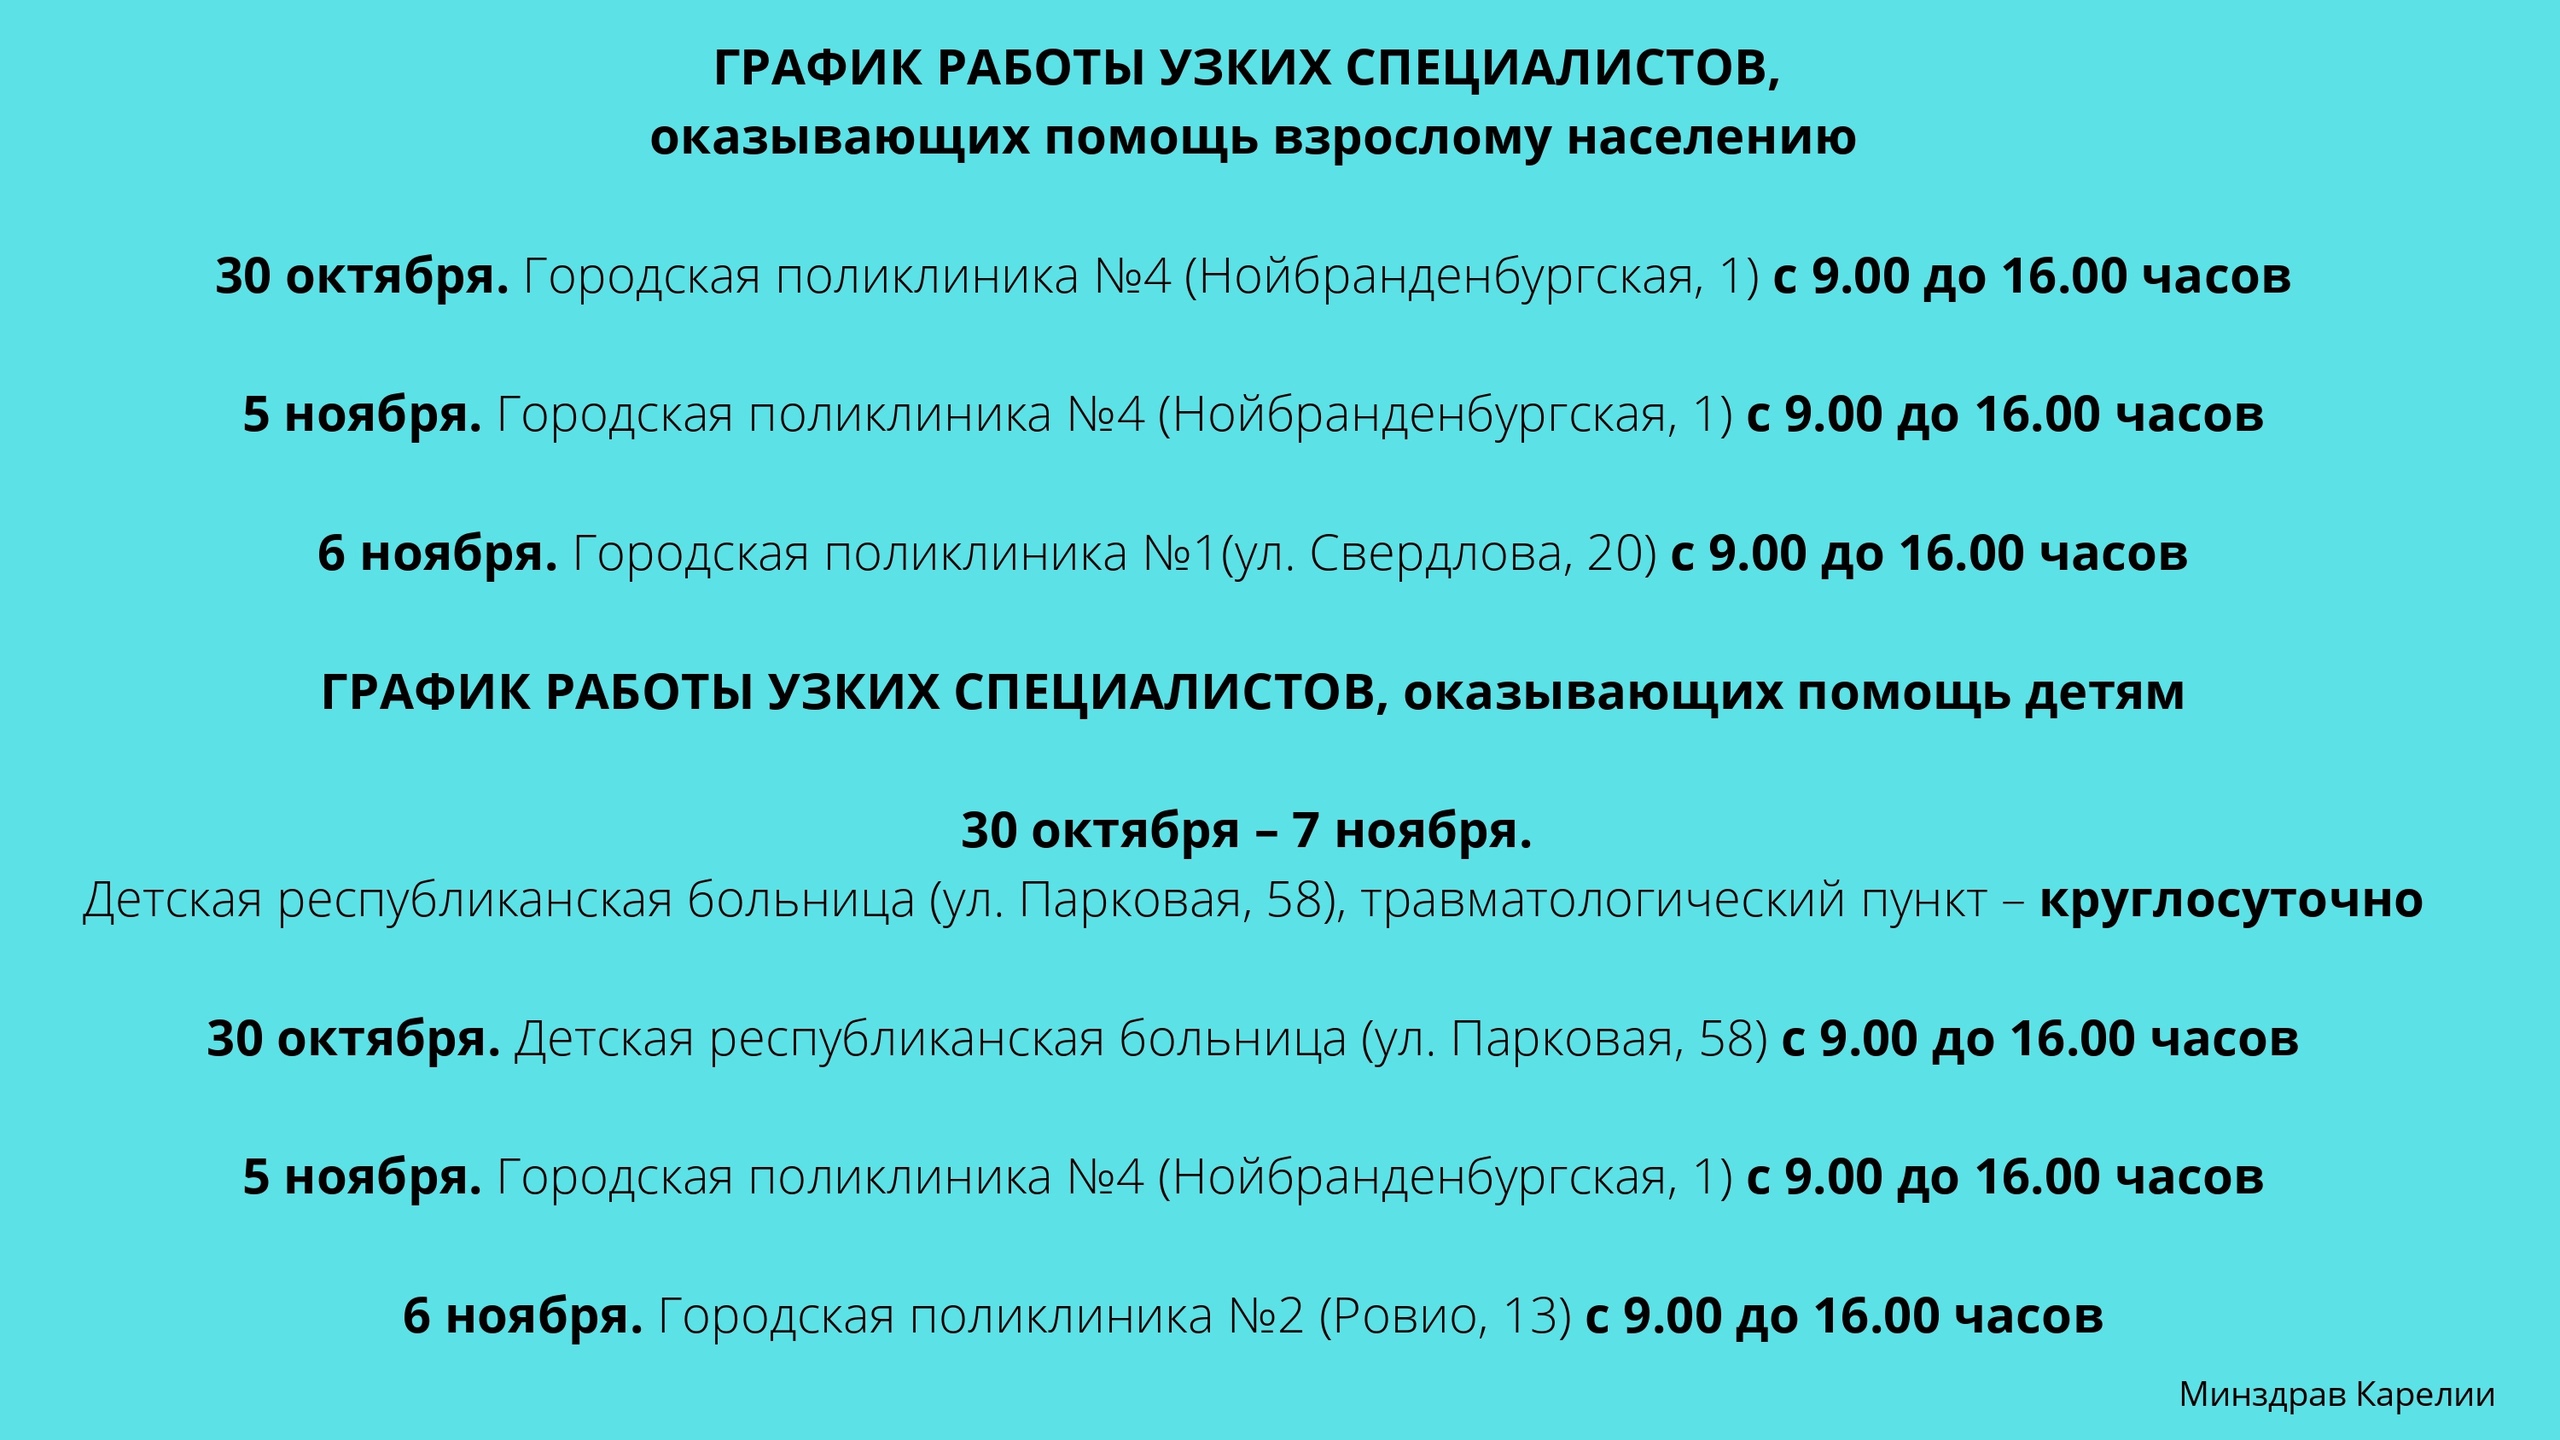 Сайт поликлиники 1 петрозаводска. Режим работы поликлиники 4 Тольятти. Часы работы поликлиники 2 в Петрозаводске.